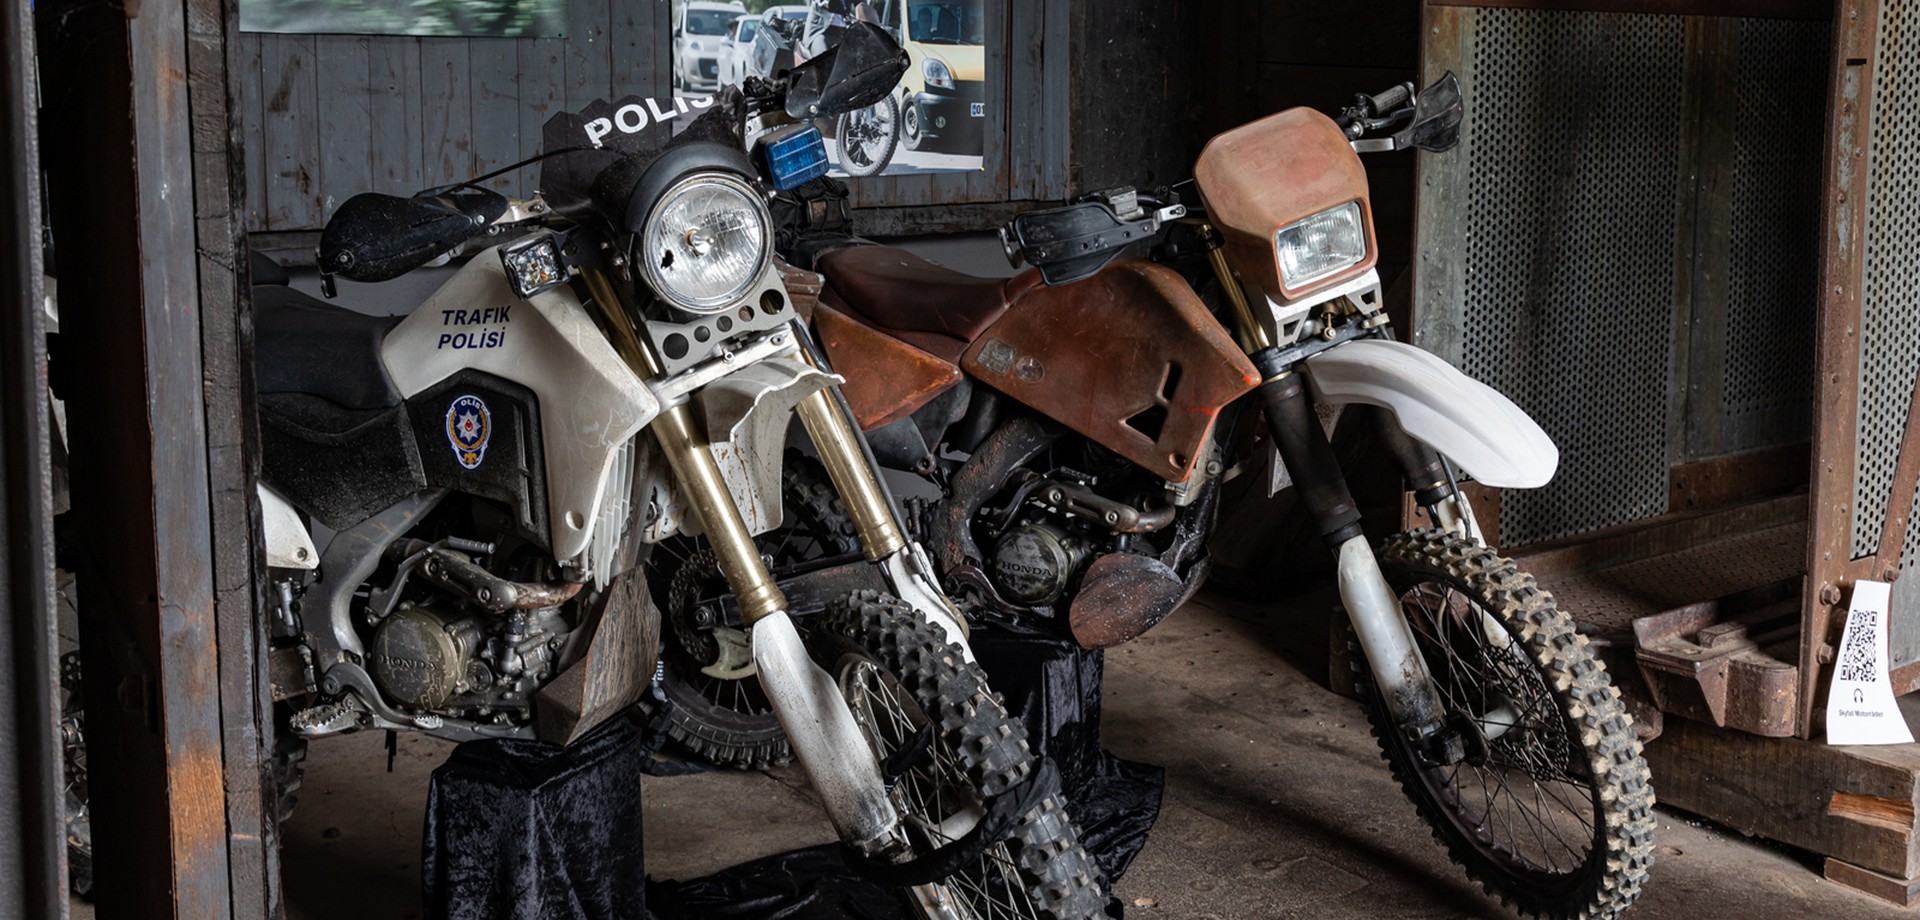 Zwei Motorräder aus dem Bond-Film "Skyfall" in der Ausstellung im Malakowturm.